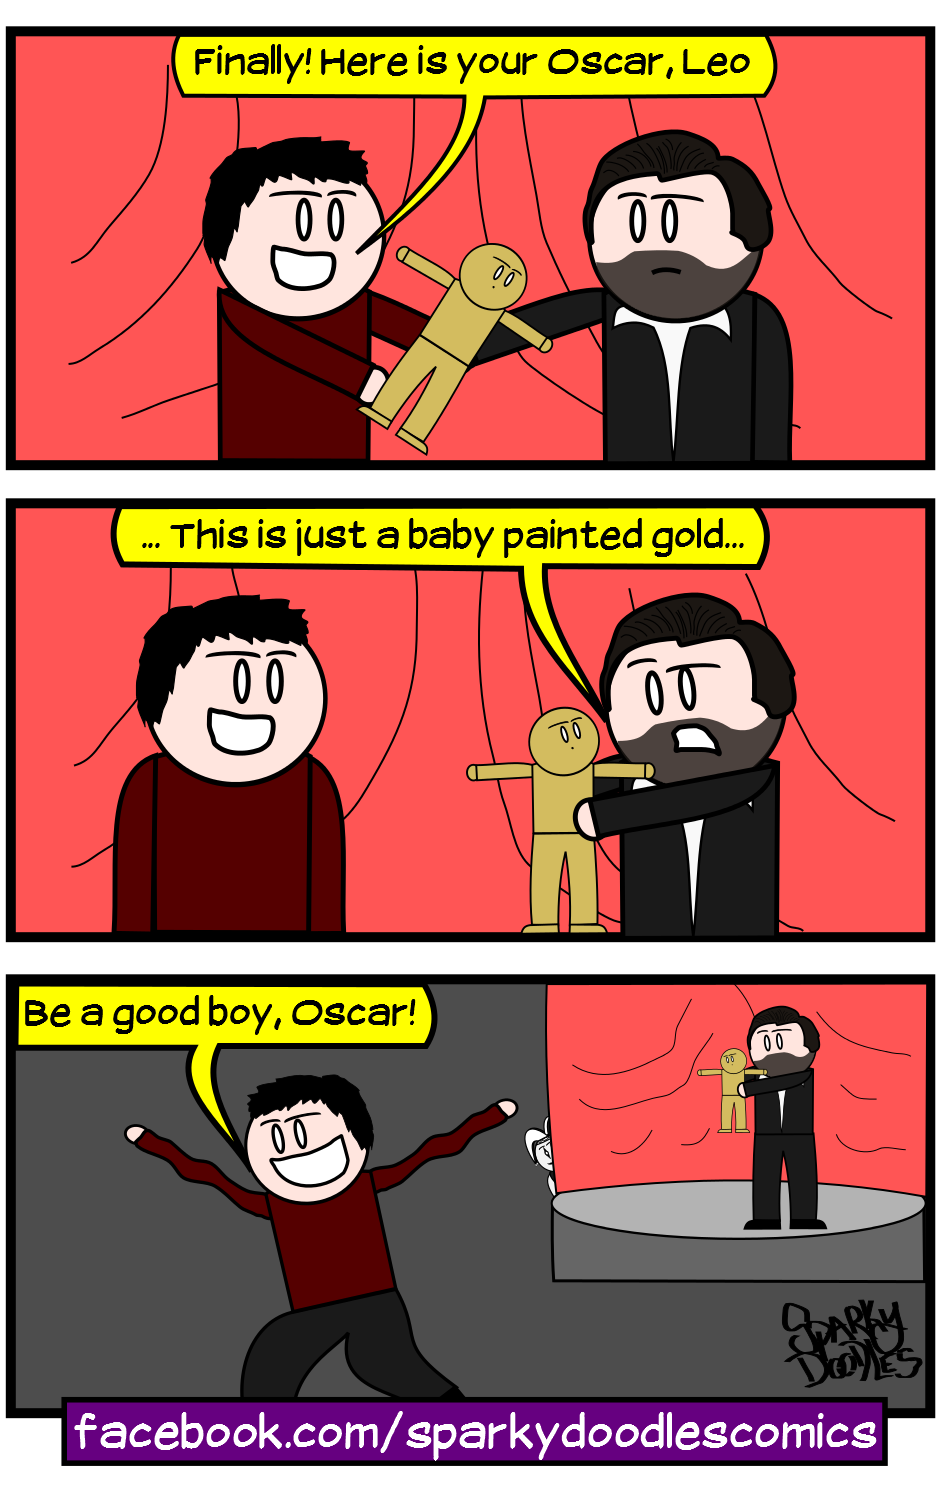 Leo gets an Oscar by Sparky Doodles